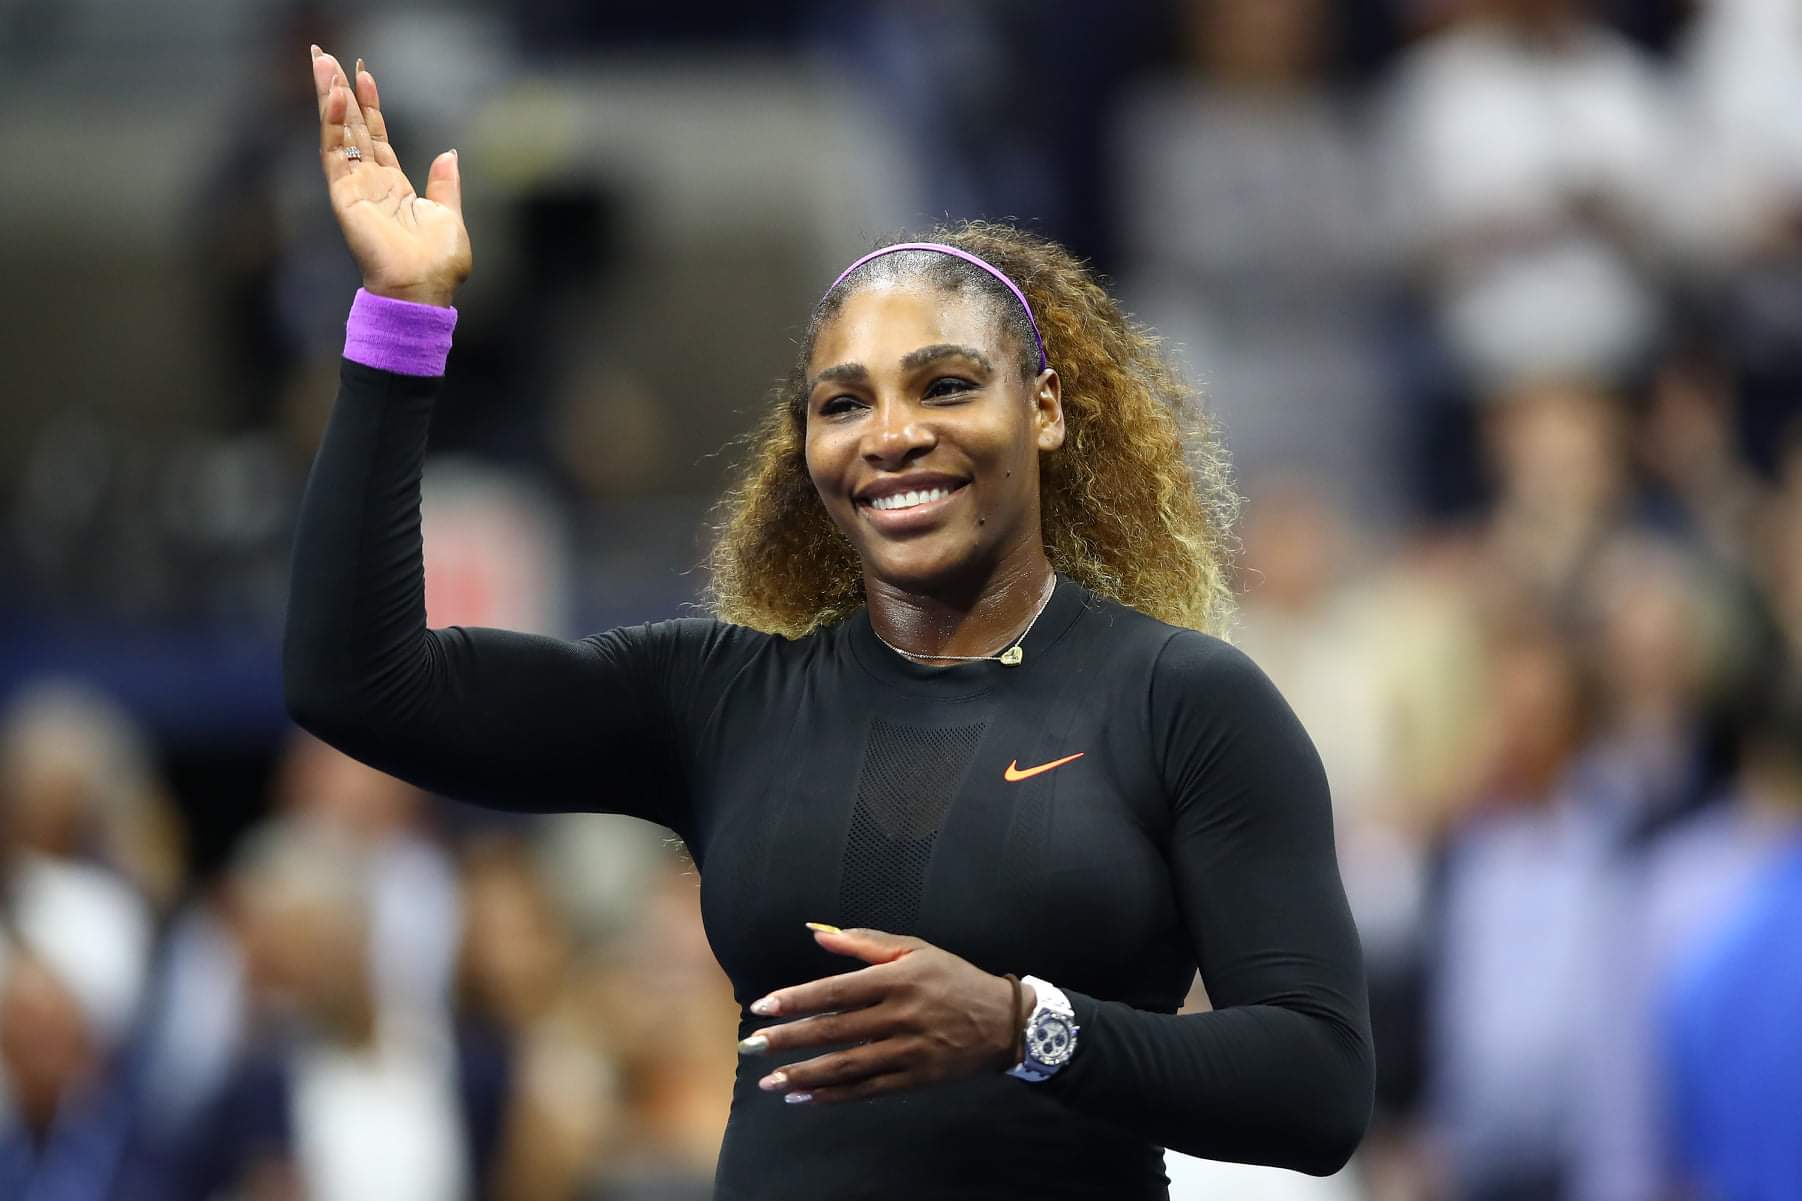 5 lições de Serena Williams para fazer uma apresentação de sucesso -  Pequenas Empresas Grandes Negócios